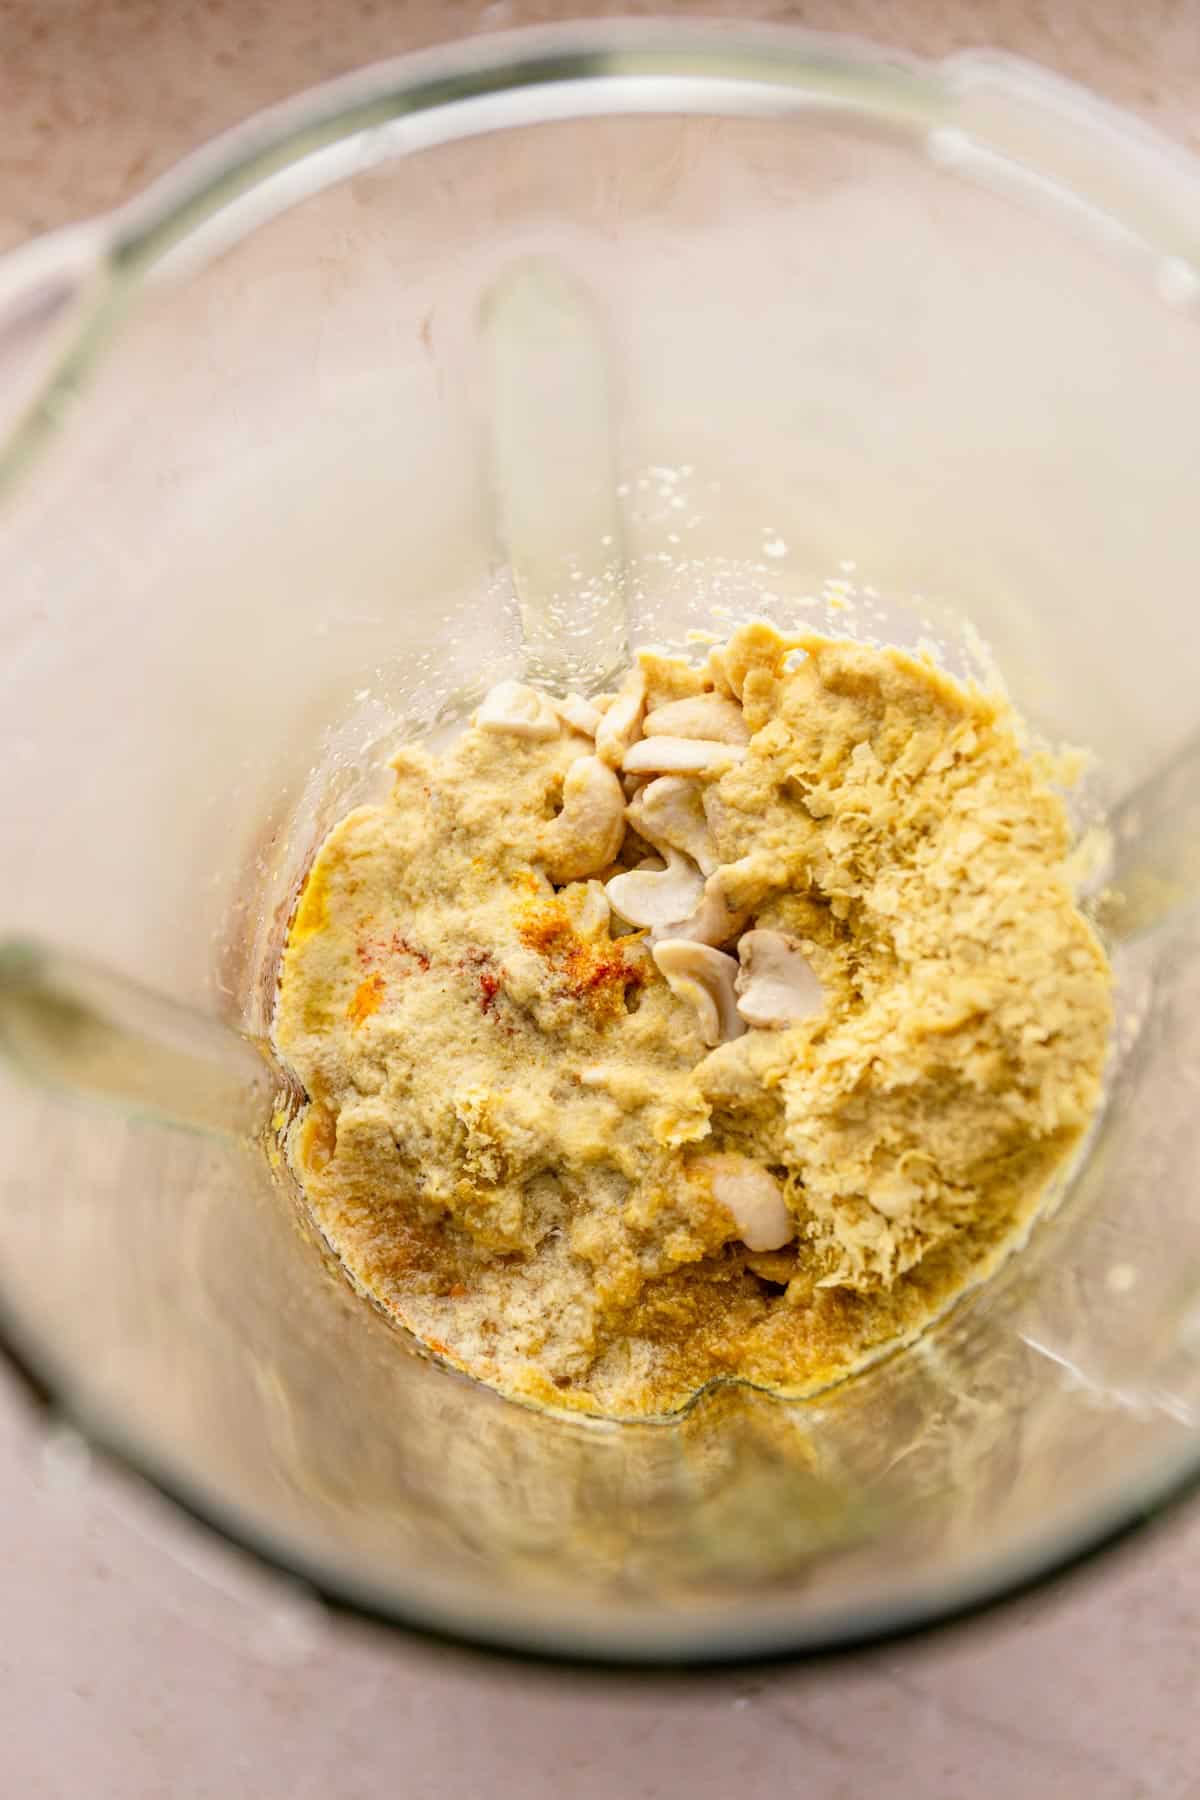 cashew crema ingredients in blender.